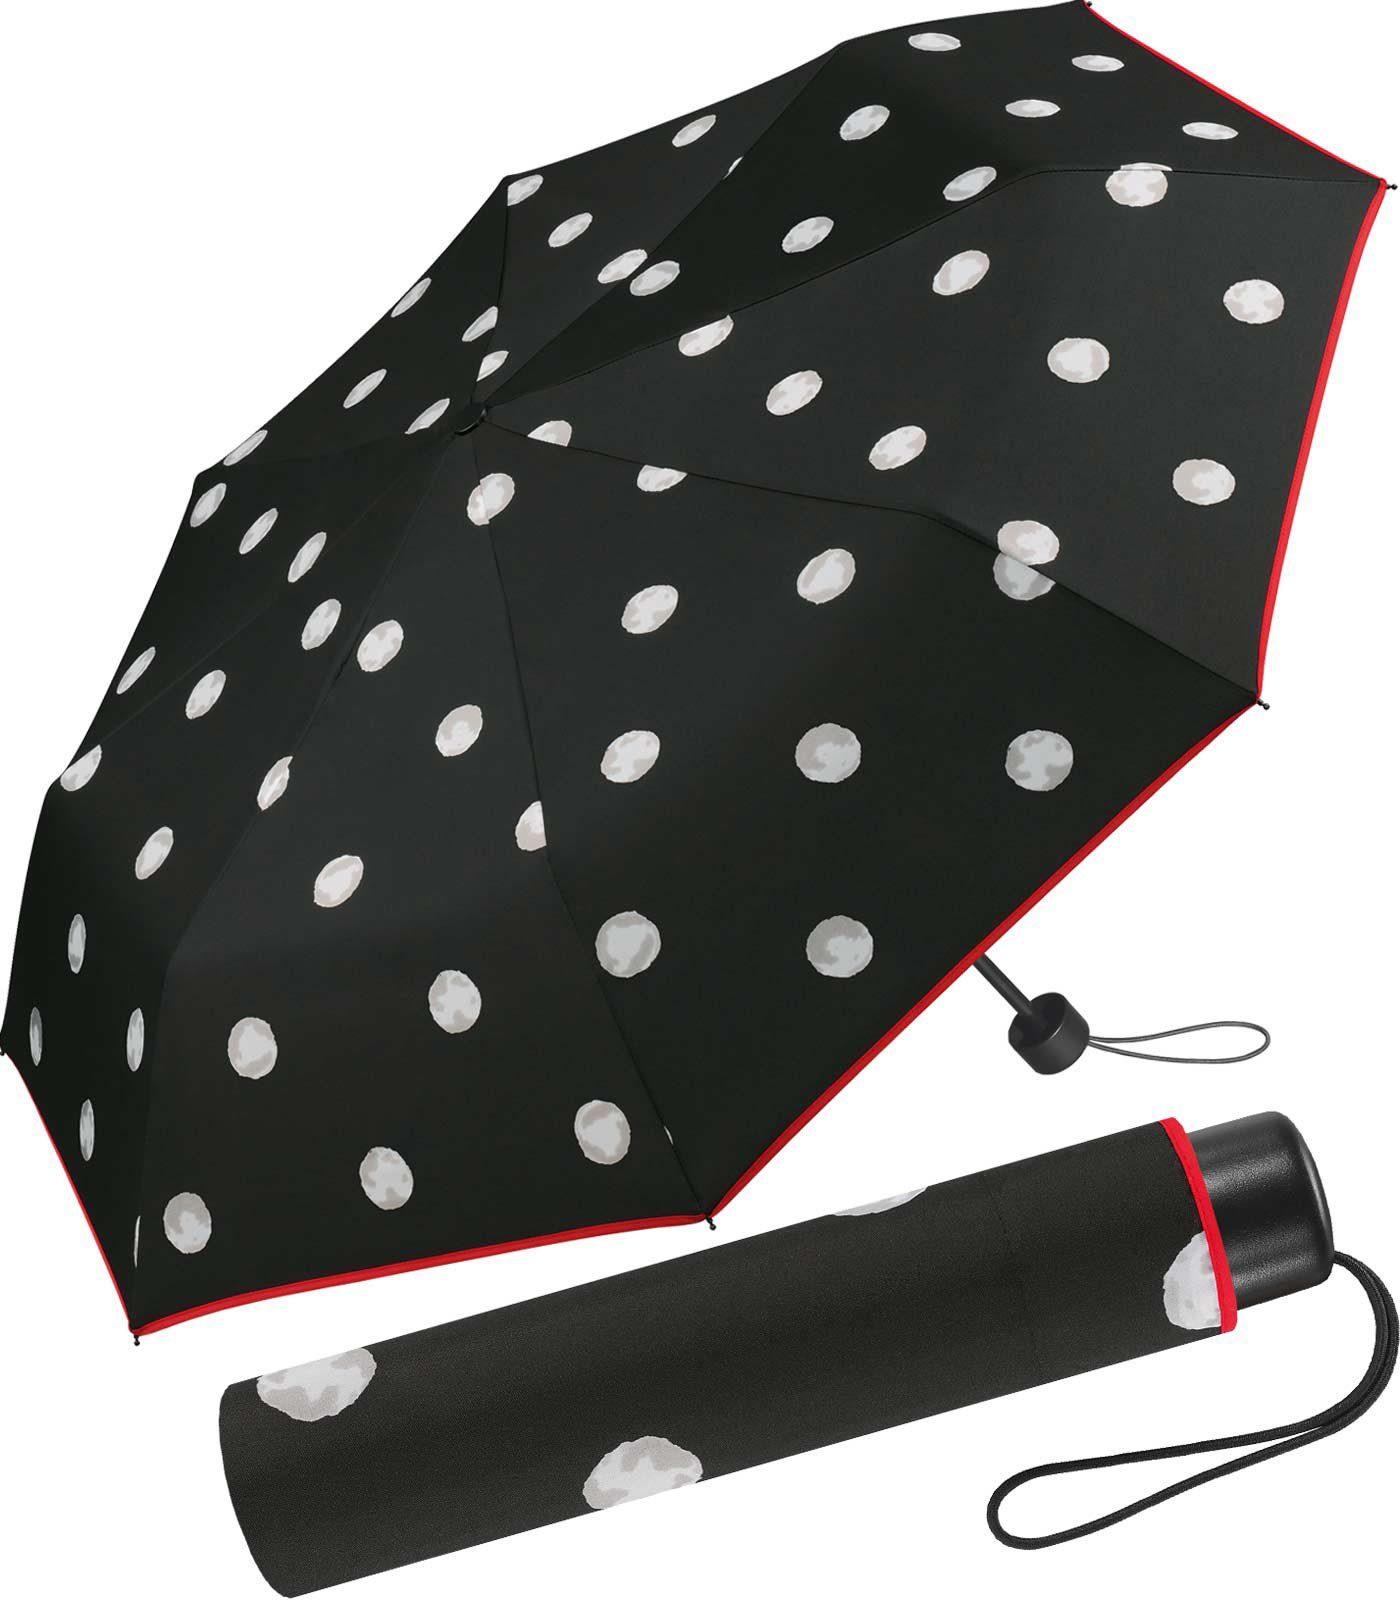 HAPPY RAIN Langregenschirm schlanker Damen-Regenschirm mit Handöffner, bedruckt mit stilvollen weißen Punkten